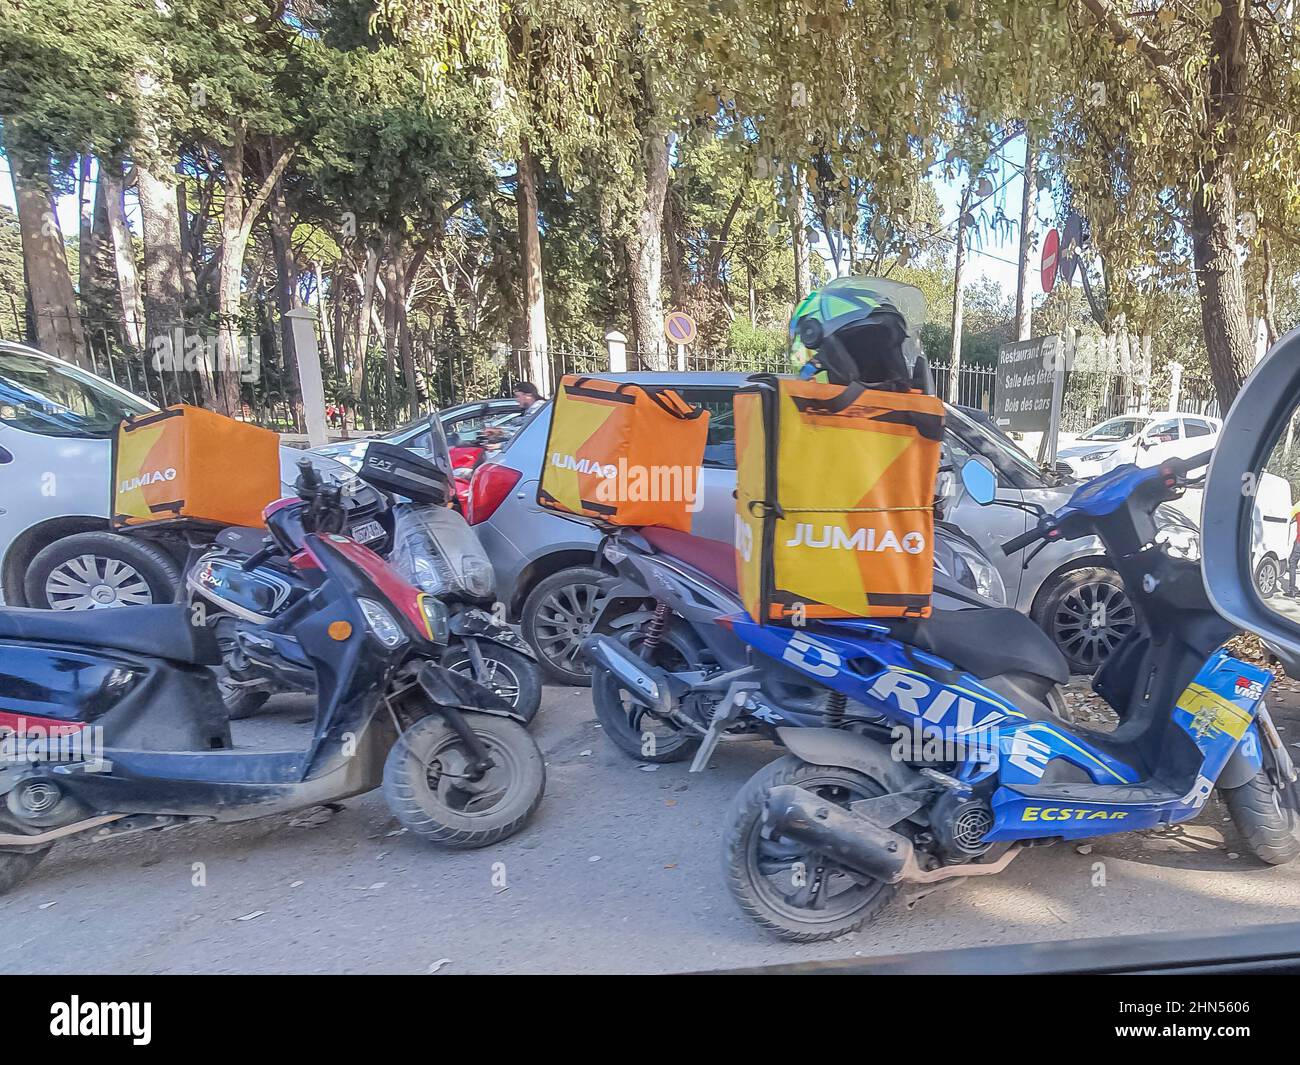 Motorscooters della ditta di servizi di consegna Jumia logistica servizi parcheggiati vicino alla foresta di Bois des Cars di Bois Des Cars. Auto parcheggiate, senza persone. Foto Stock